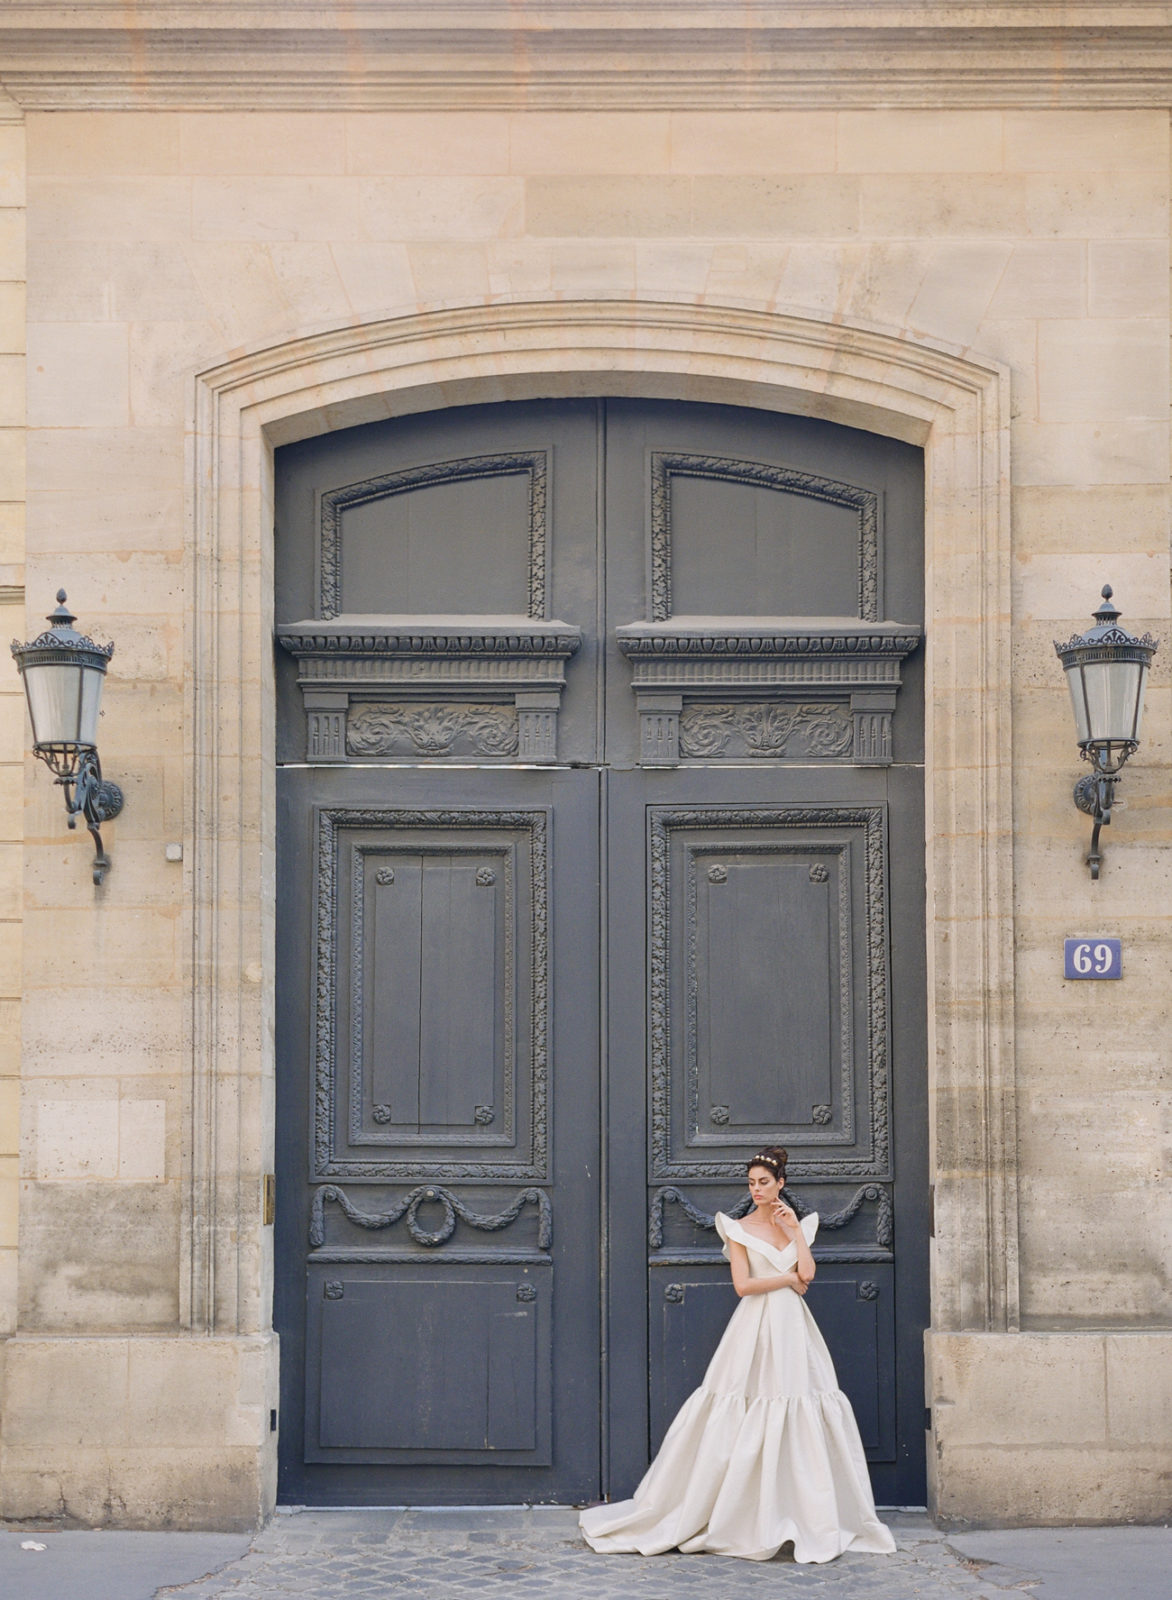 Musee Rodin Wedding Photographer | Paris Garden Wedding Photography | Paris Film Photographer | France Wedding Photography | Molly Carr Photography | Paris Outdoor Wedding | Bride in Front of Paris Door